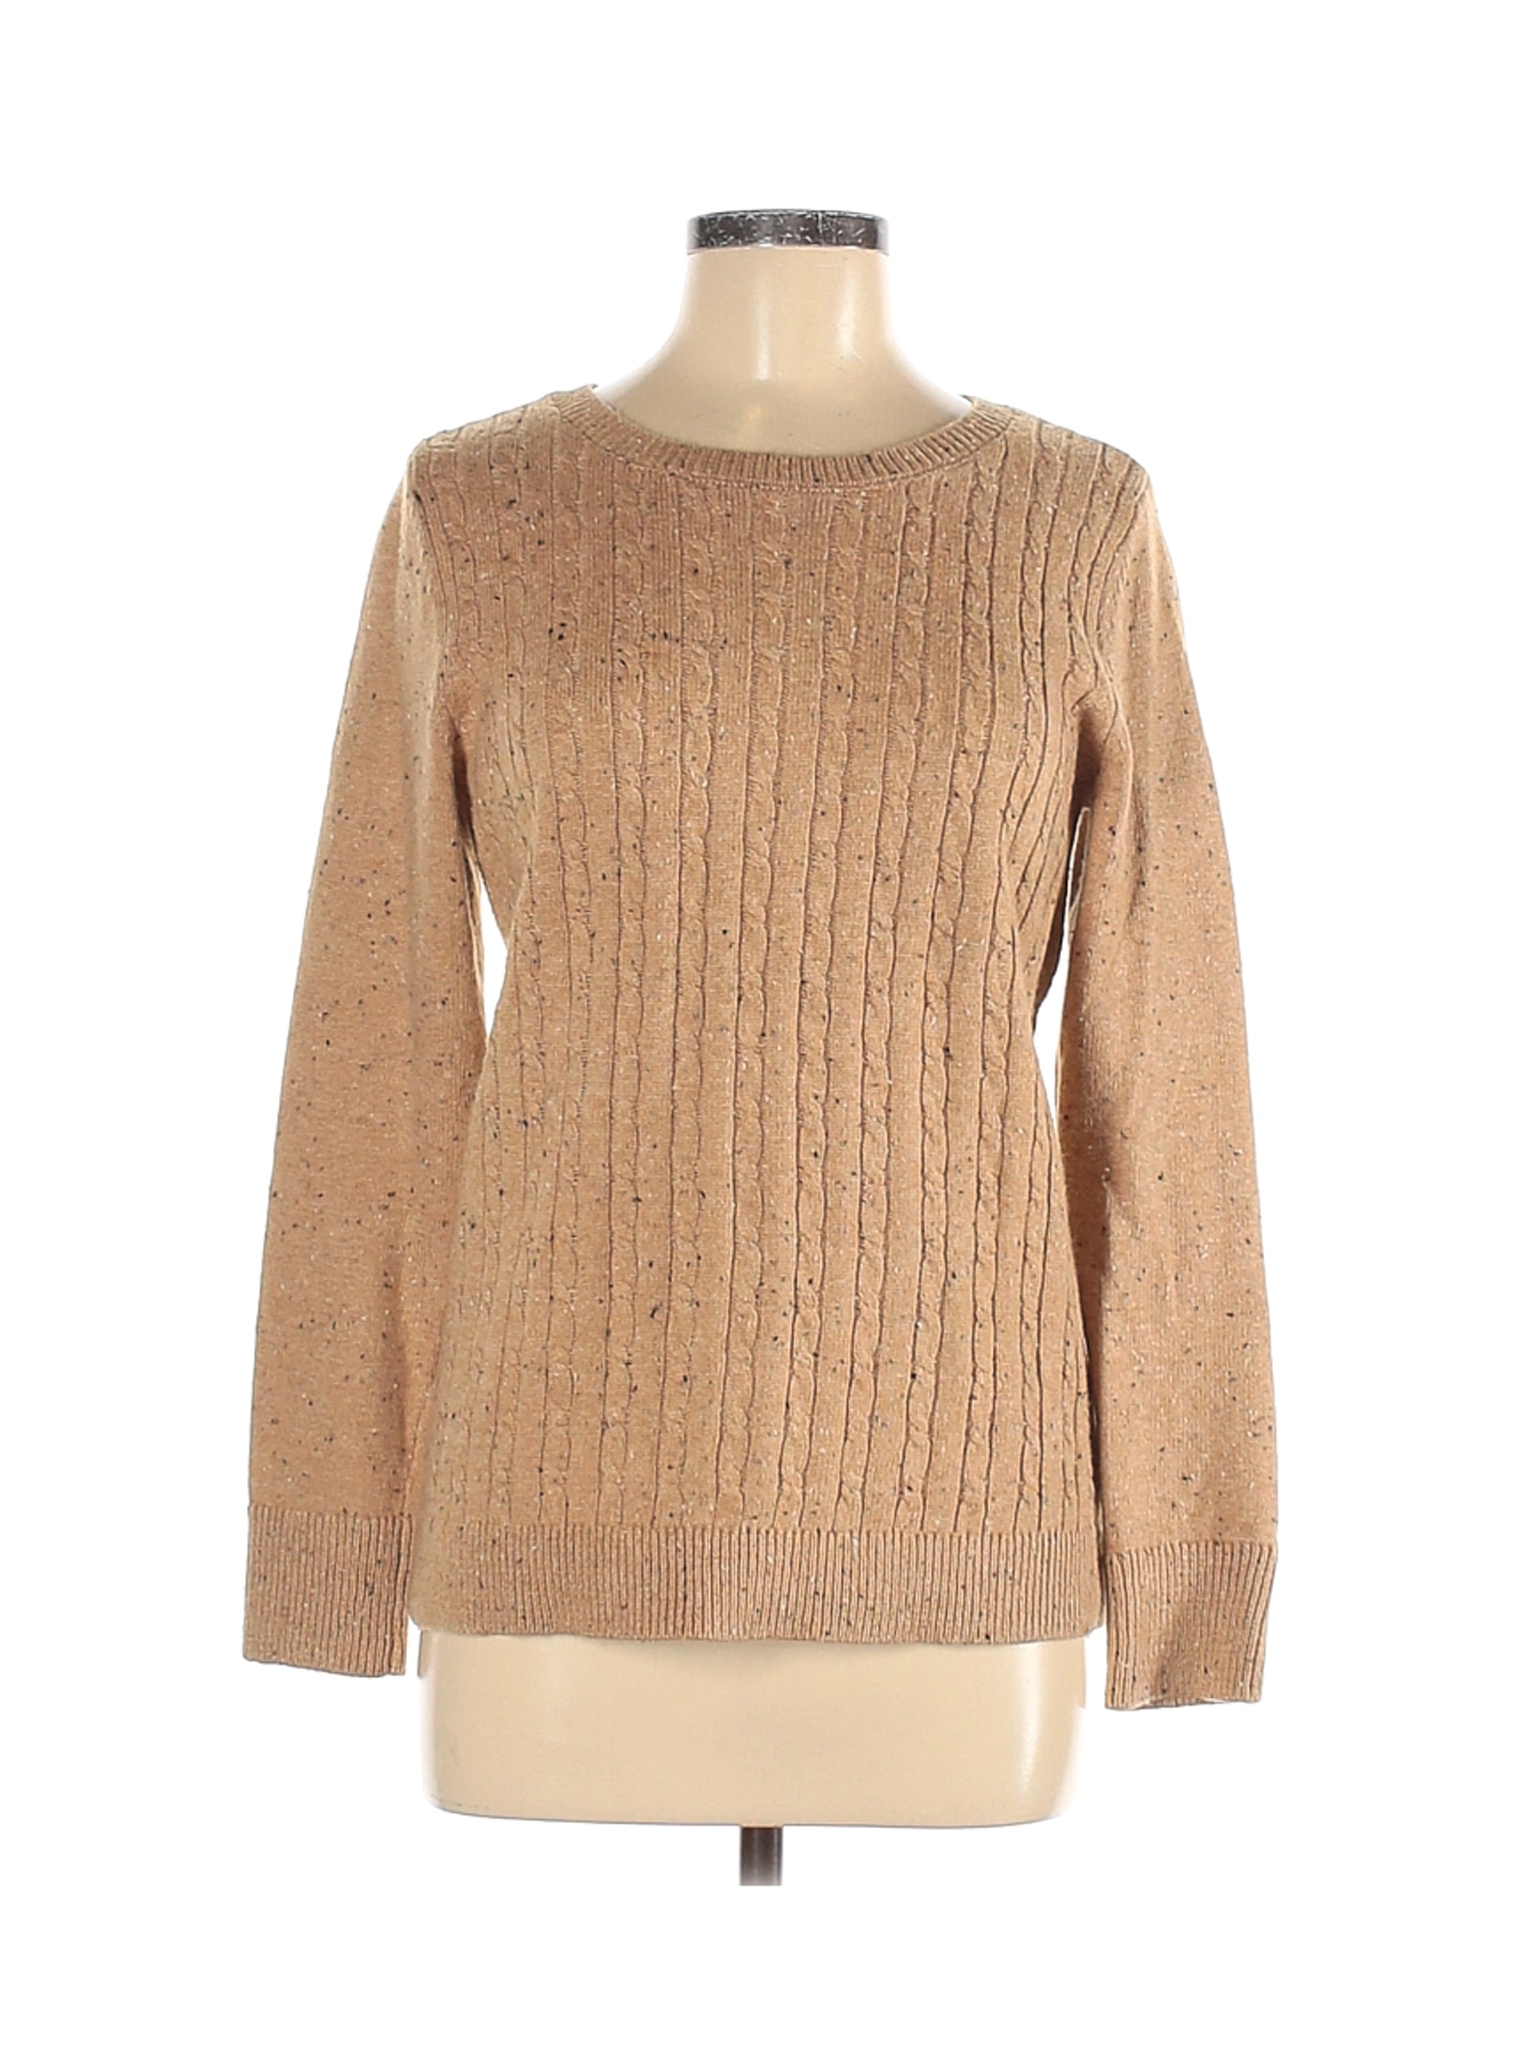 Talbots Women Brown Pullover Sweater M | eBay